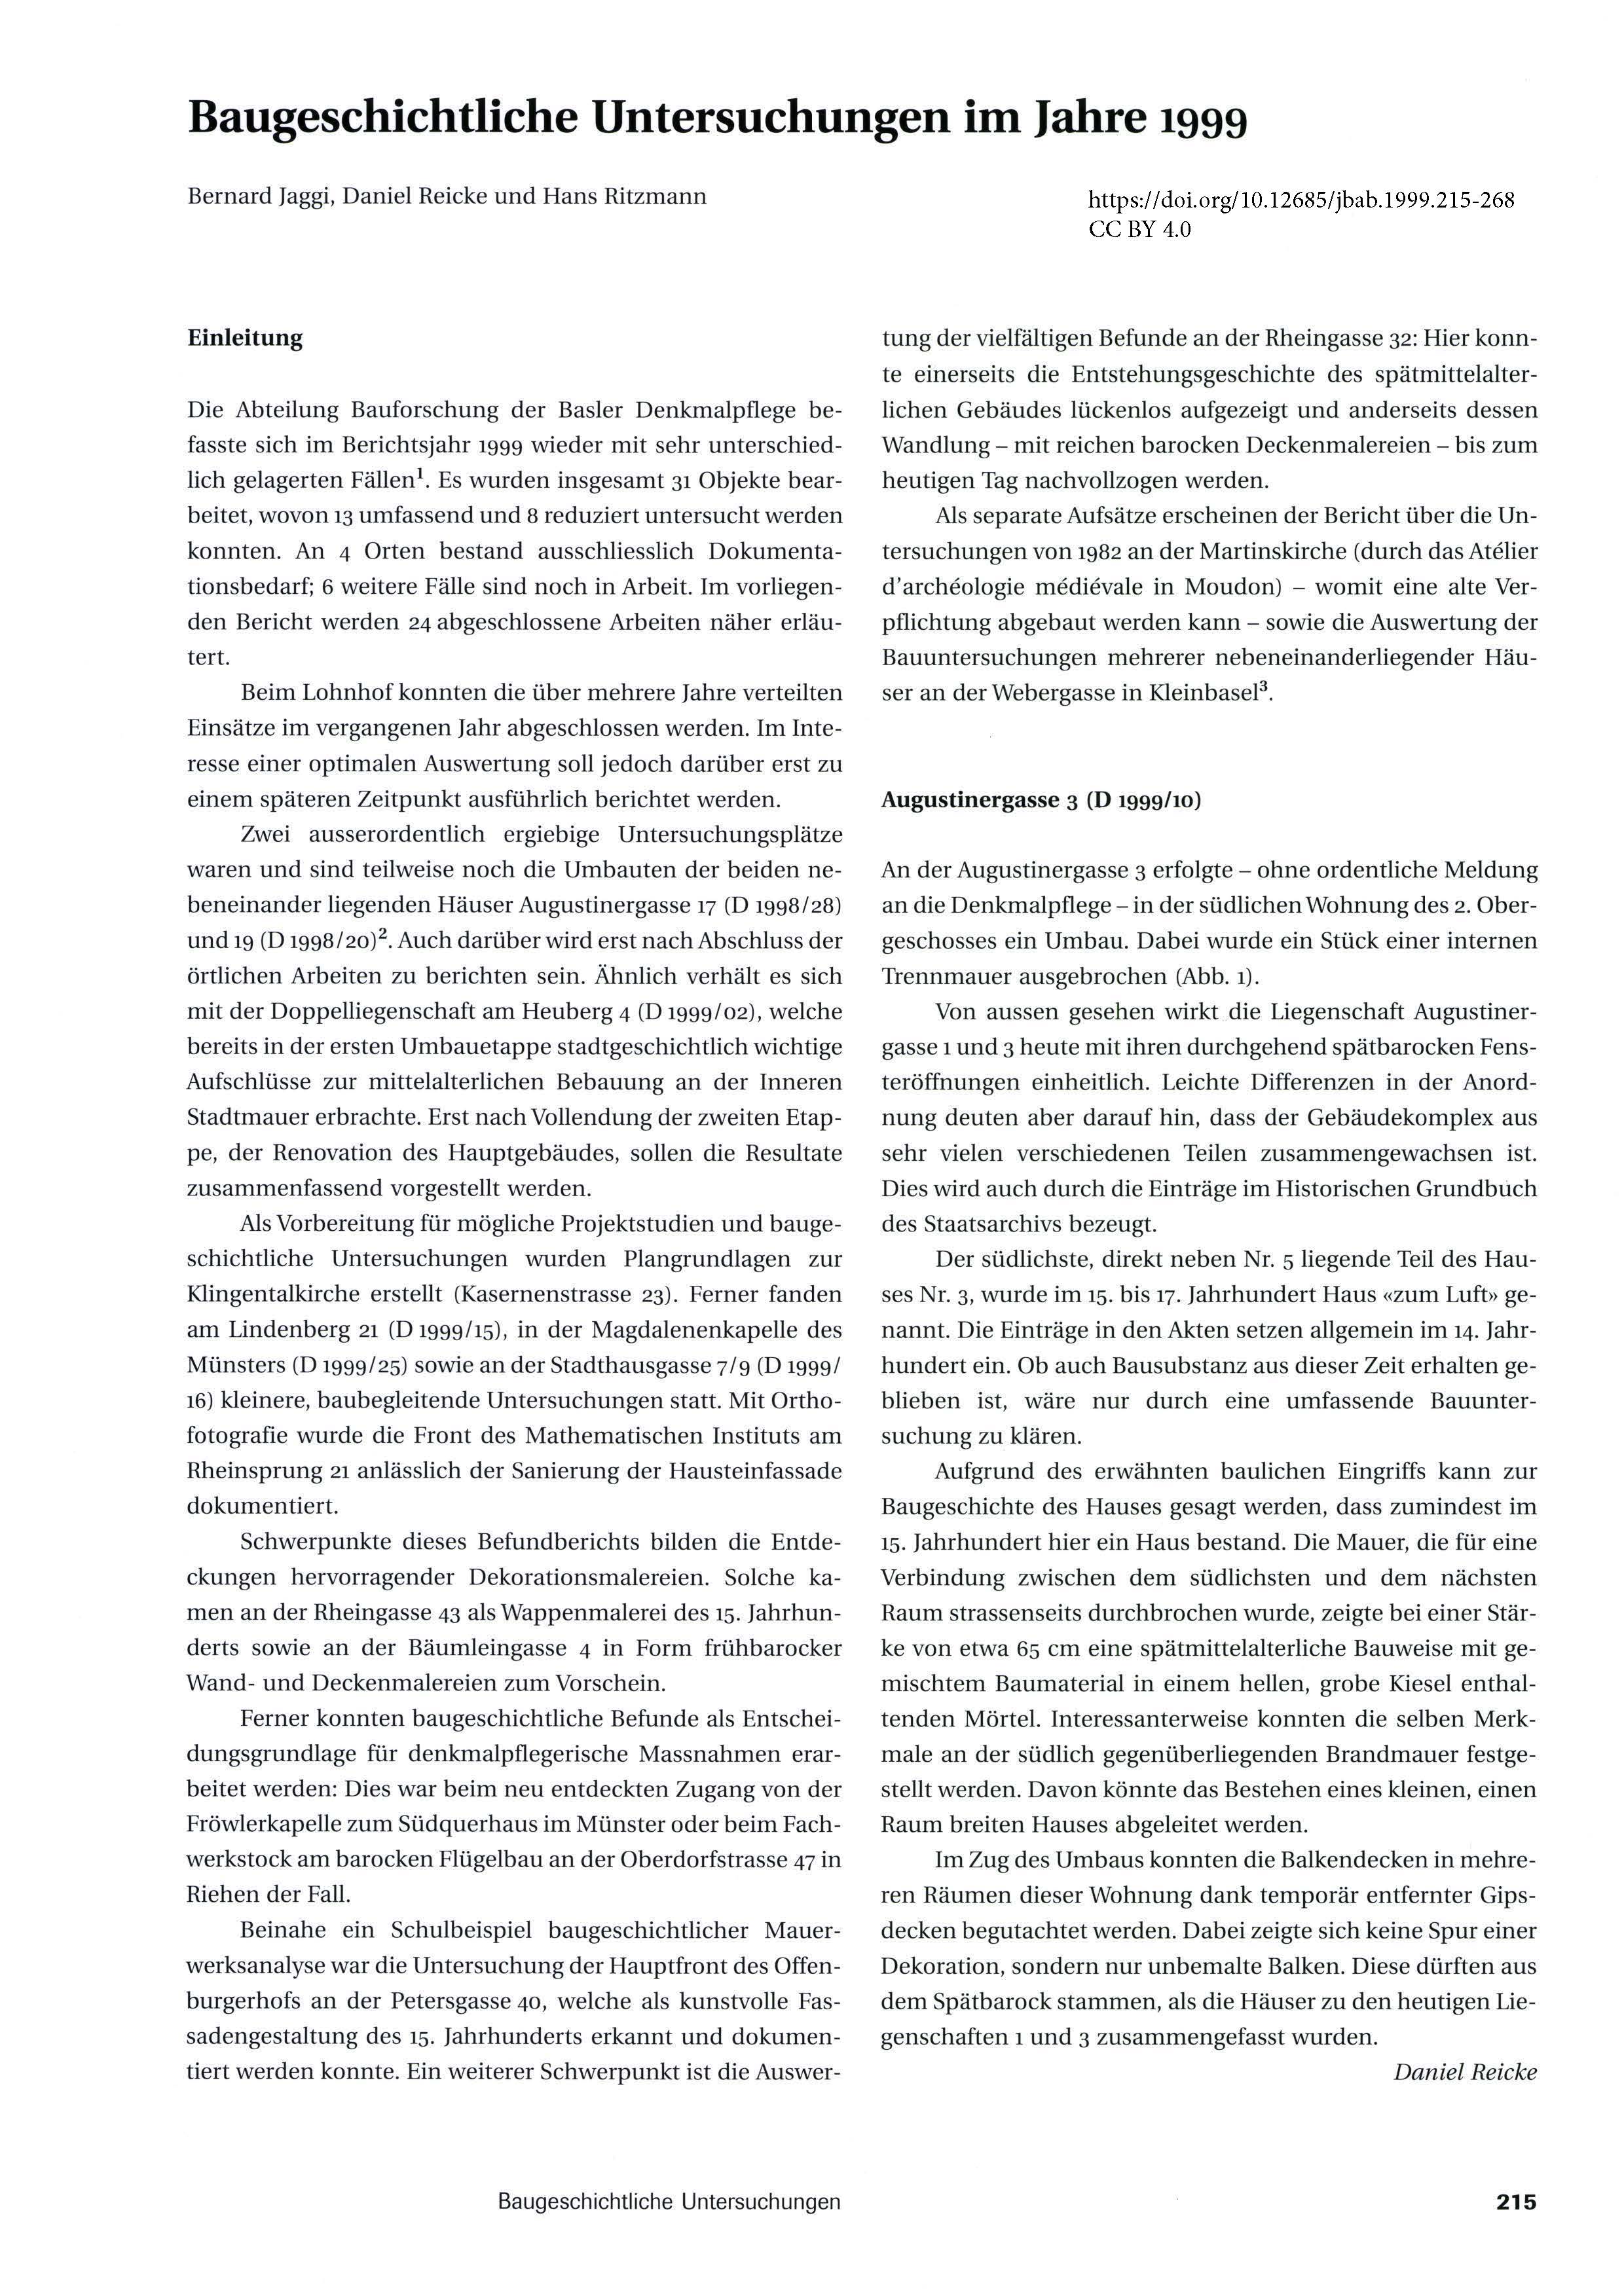 Erste Seite des Artikels zur Bauforschung im Jahr 1999